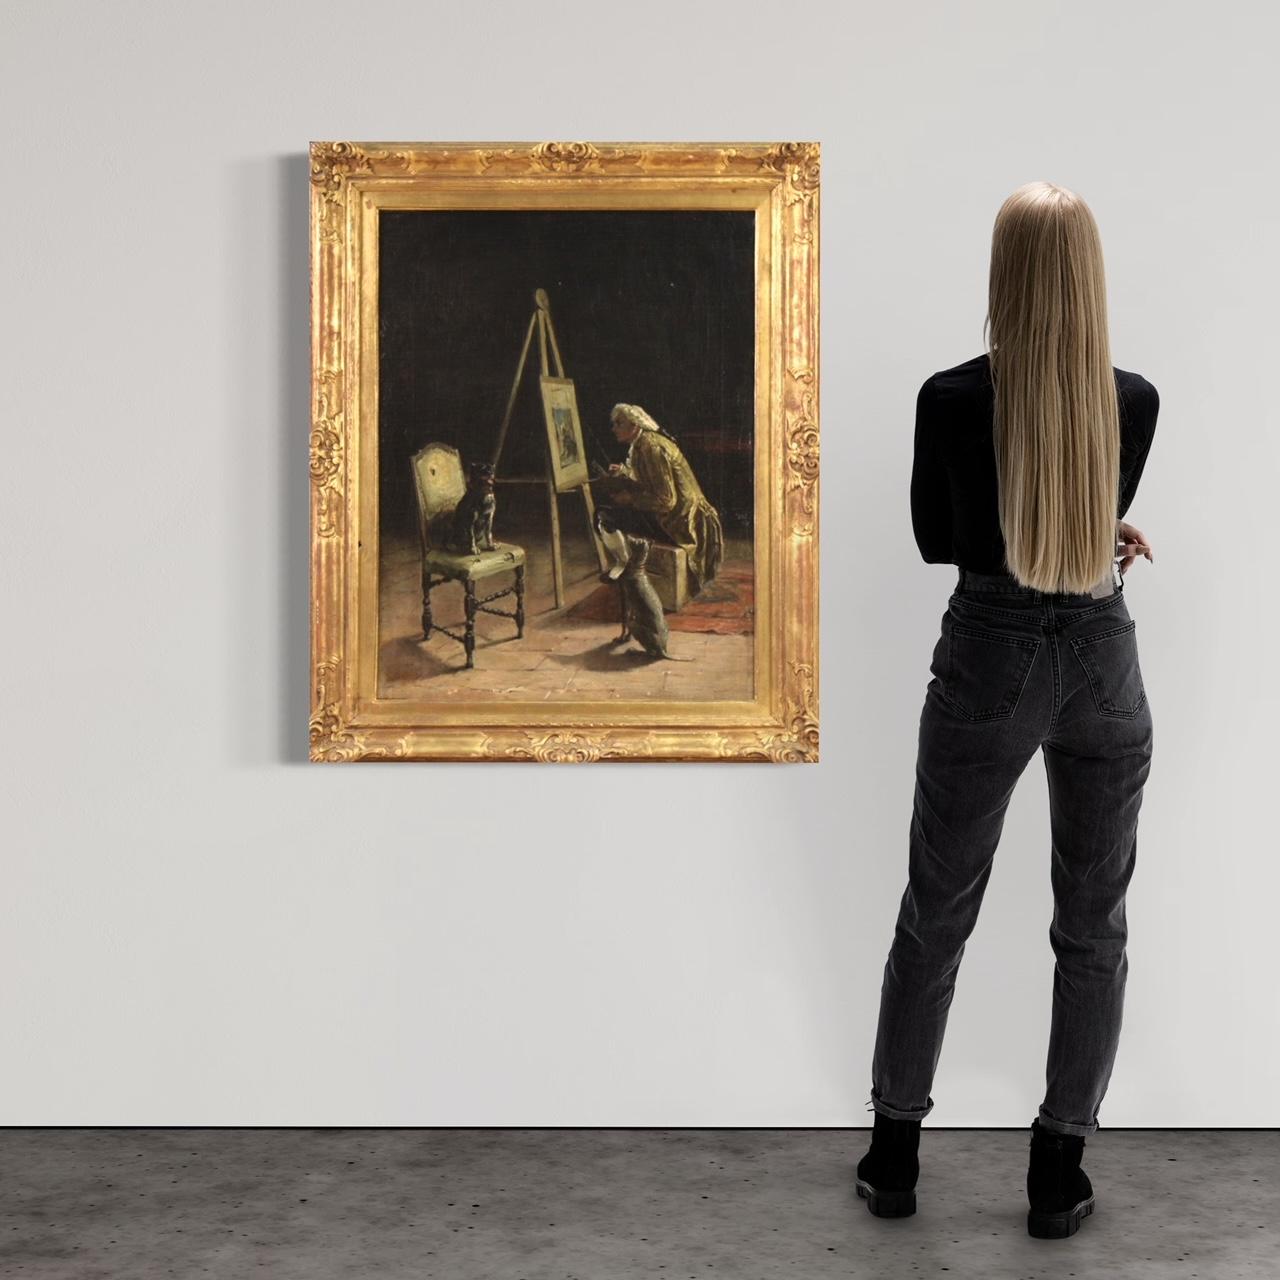 Raffinierte italienische Malerei aus der zweiten Hälfte des 19. Jahrhunderts. Öl auf Leinwand, links unten signiert G. Bottero, ein Werk des italienischen Malers Giuseppe Bottero (1846-1930), ohne Beglaubigung. Ein Gemälde mit einem kuriosen und